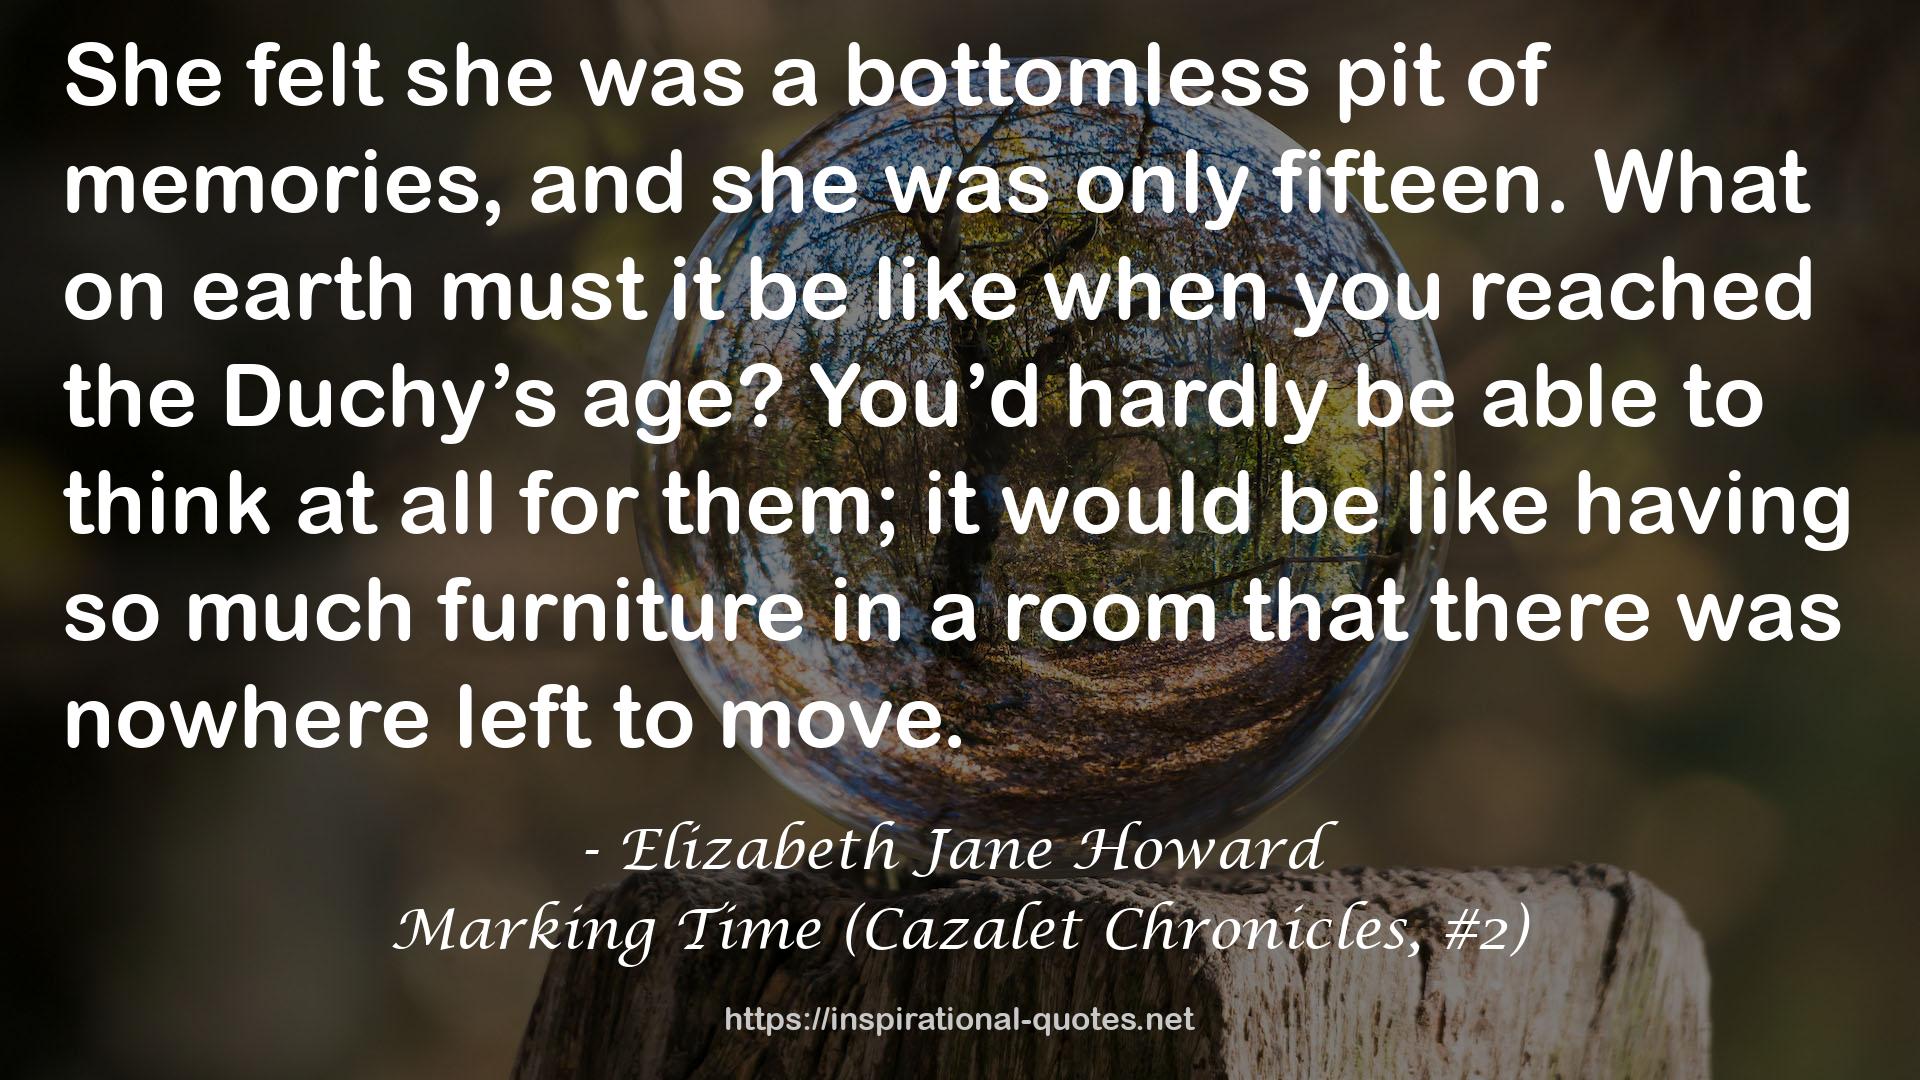 Elizabeth Jane Howard QUOTES